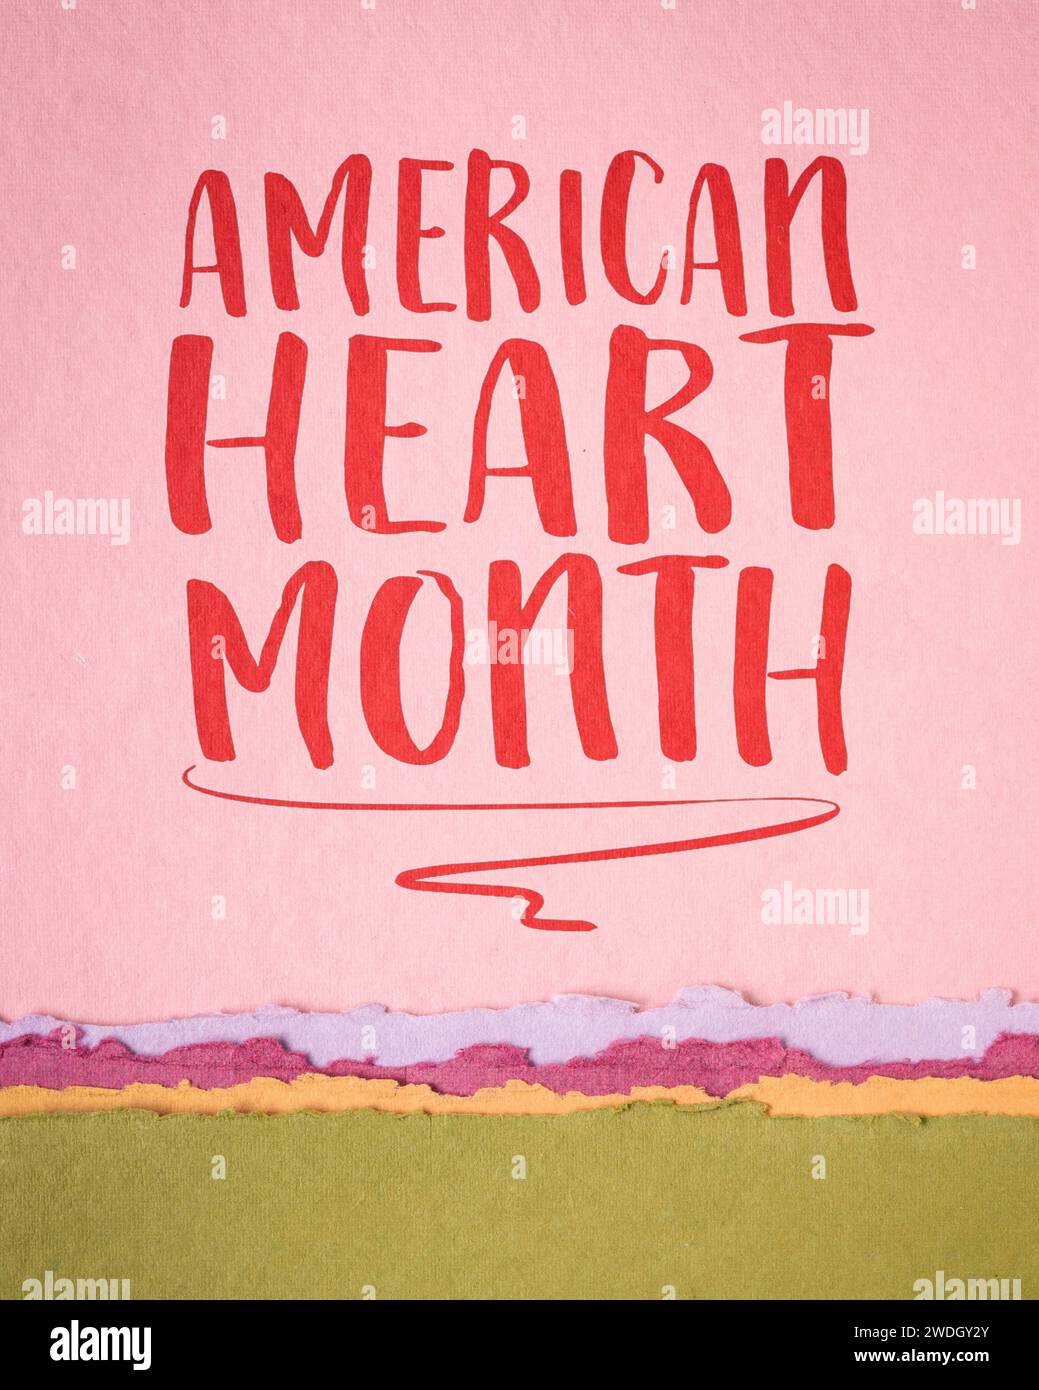 American Heart Month - Begehung jährlich im Februar gehalten, Erinnerungsnotiz auf Kunstpapier, Herz-Kreislauf-Gesundheitskonzept. Stockfoto